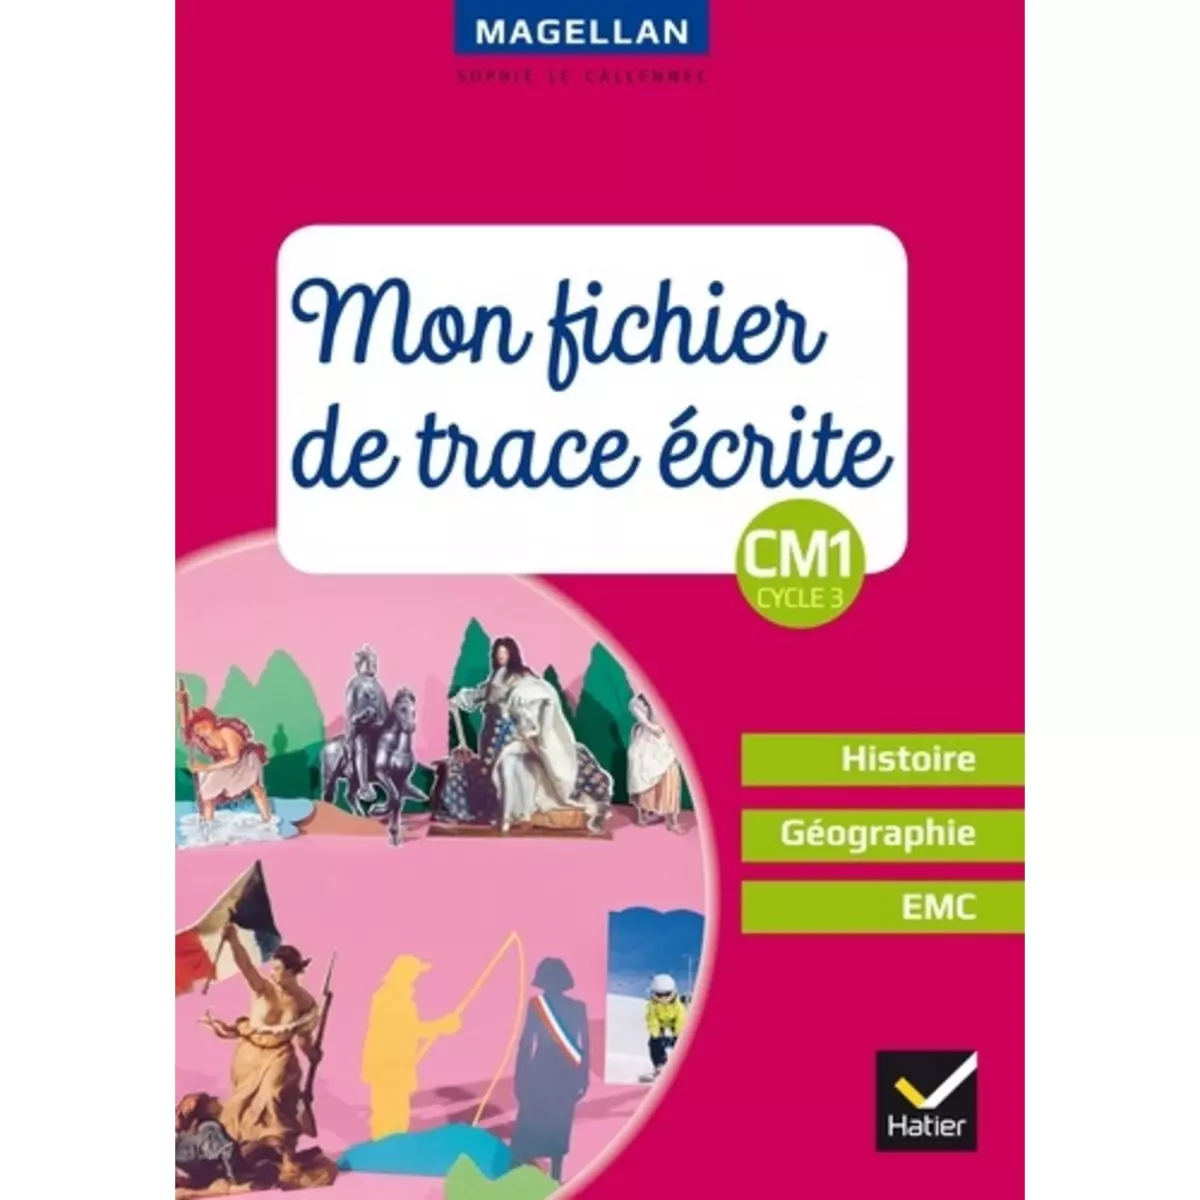  HISTOIRE GEOGRAPHIE EMC CM1 CYCLE 3 MAGELLAN. MON FICHIER DE TRACE ECRITE, EDITION 2018, Le Callennec Sophie